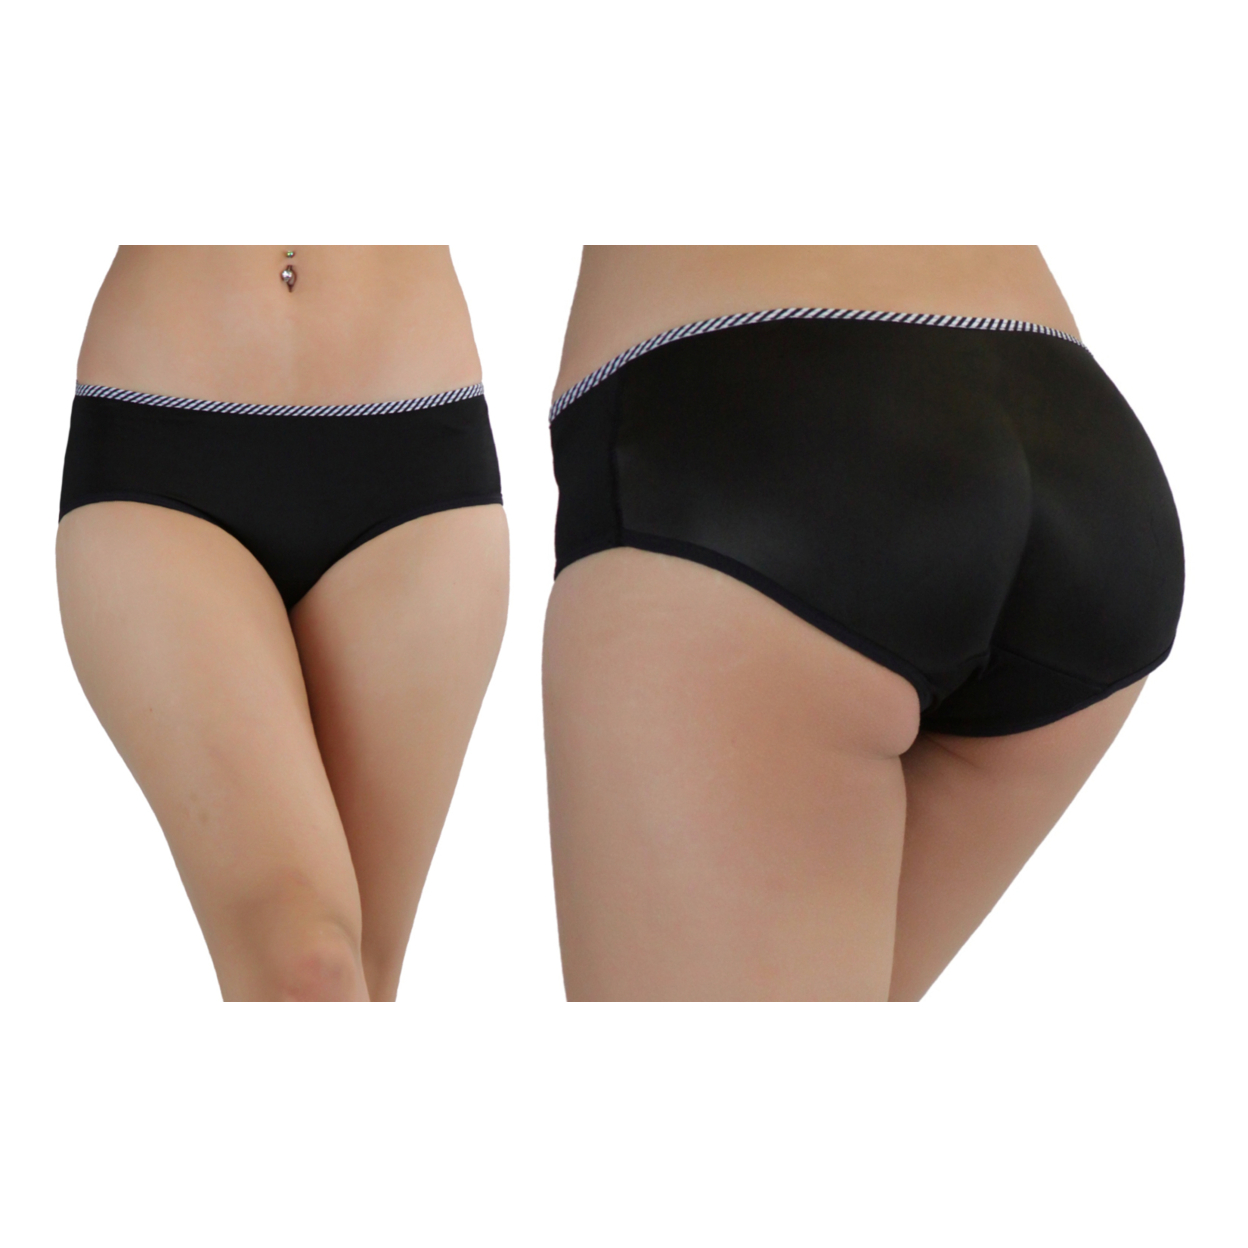 Women's Instant Butt-Booster Brief - XL, Beige